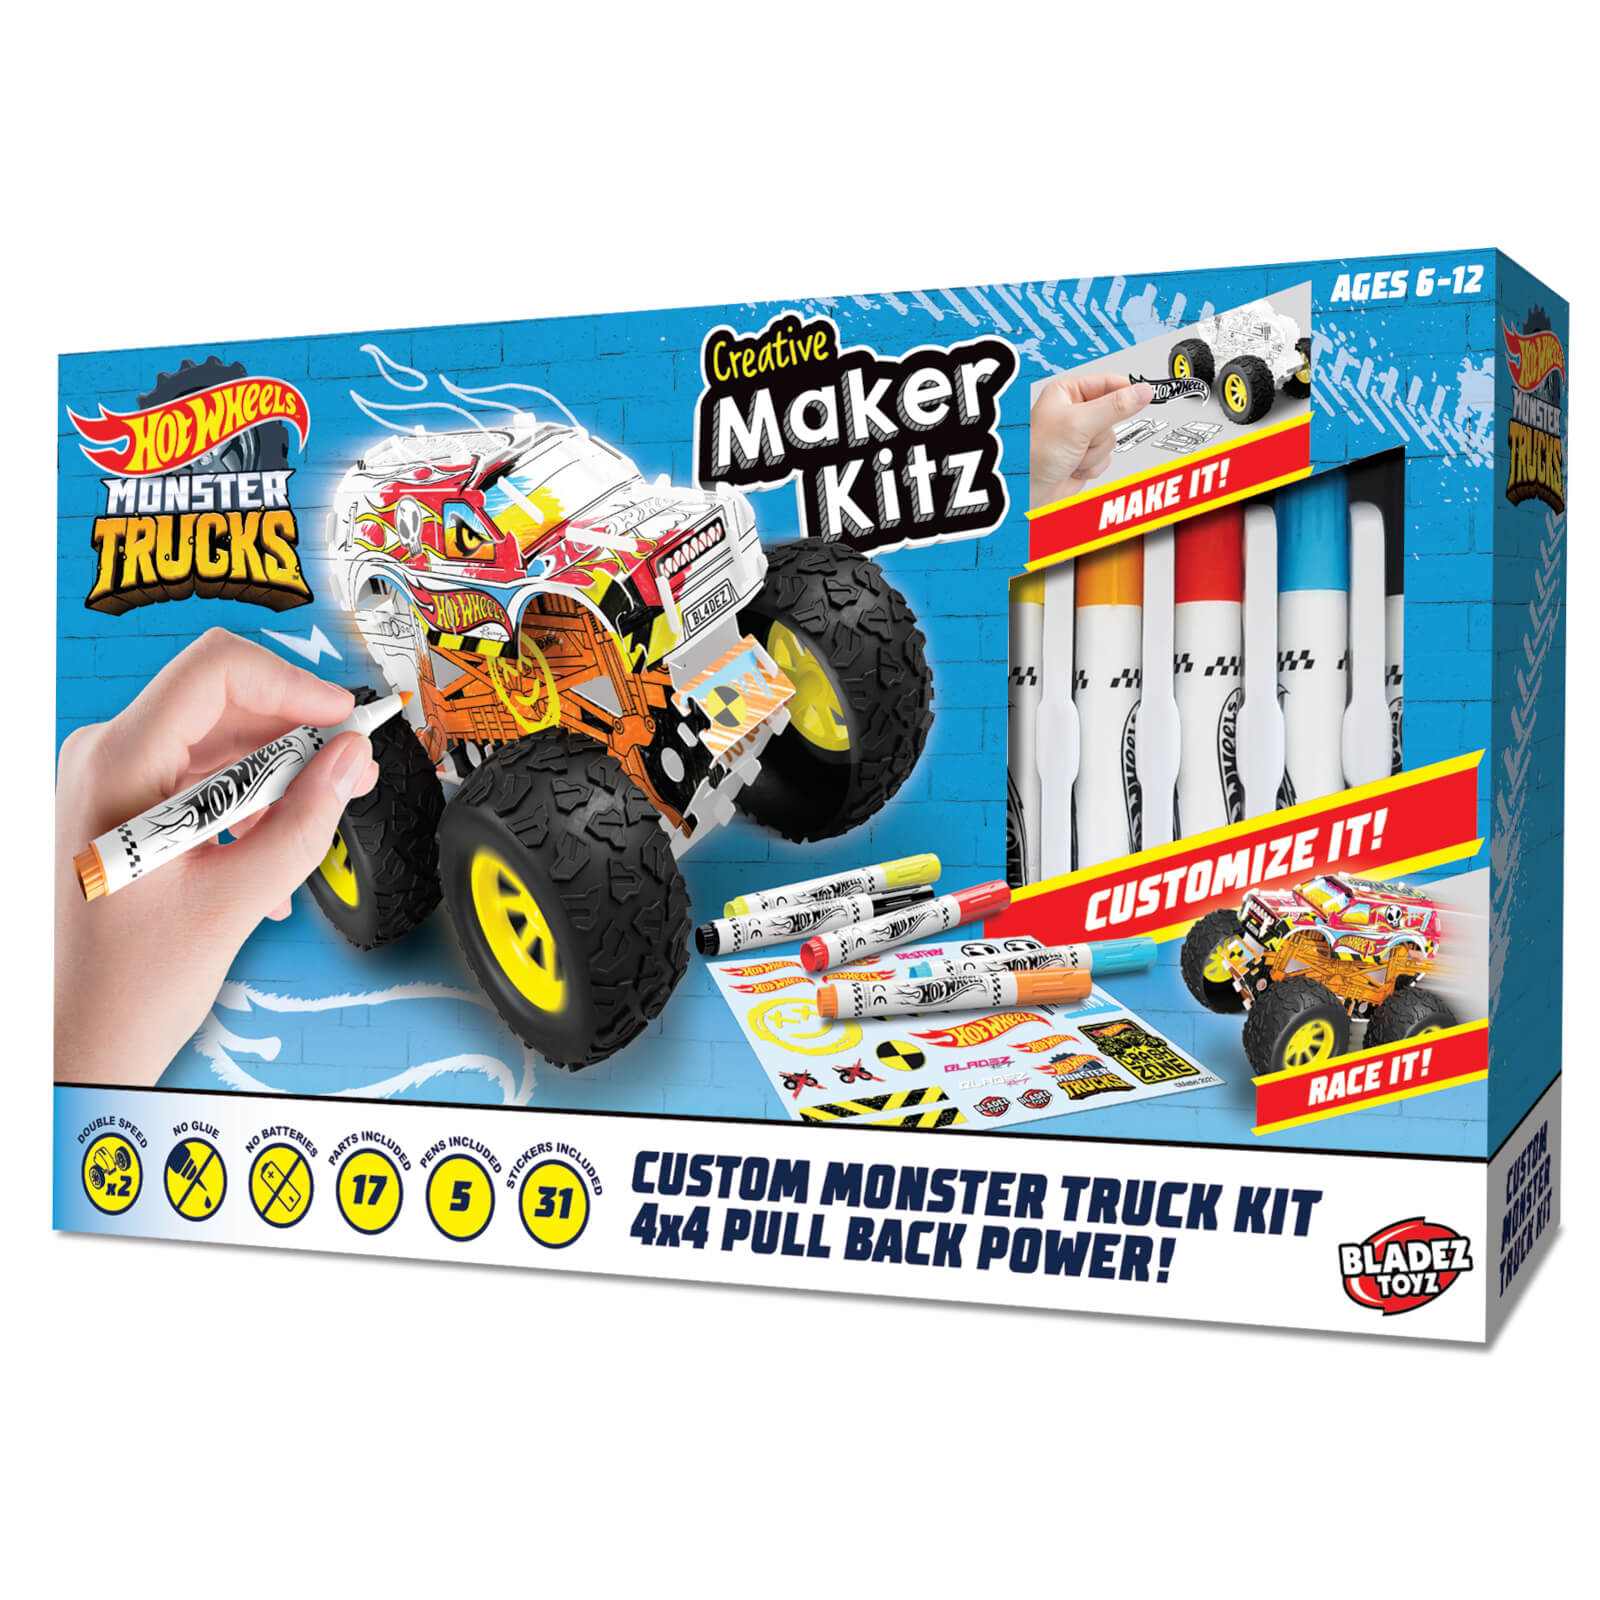 Maker Kitz - Custom Monster Truck Kit